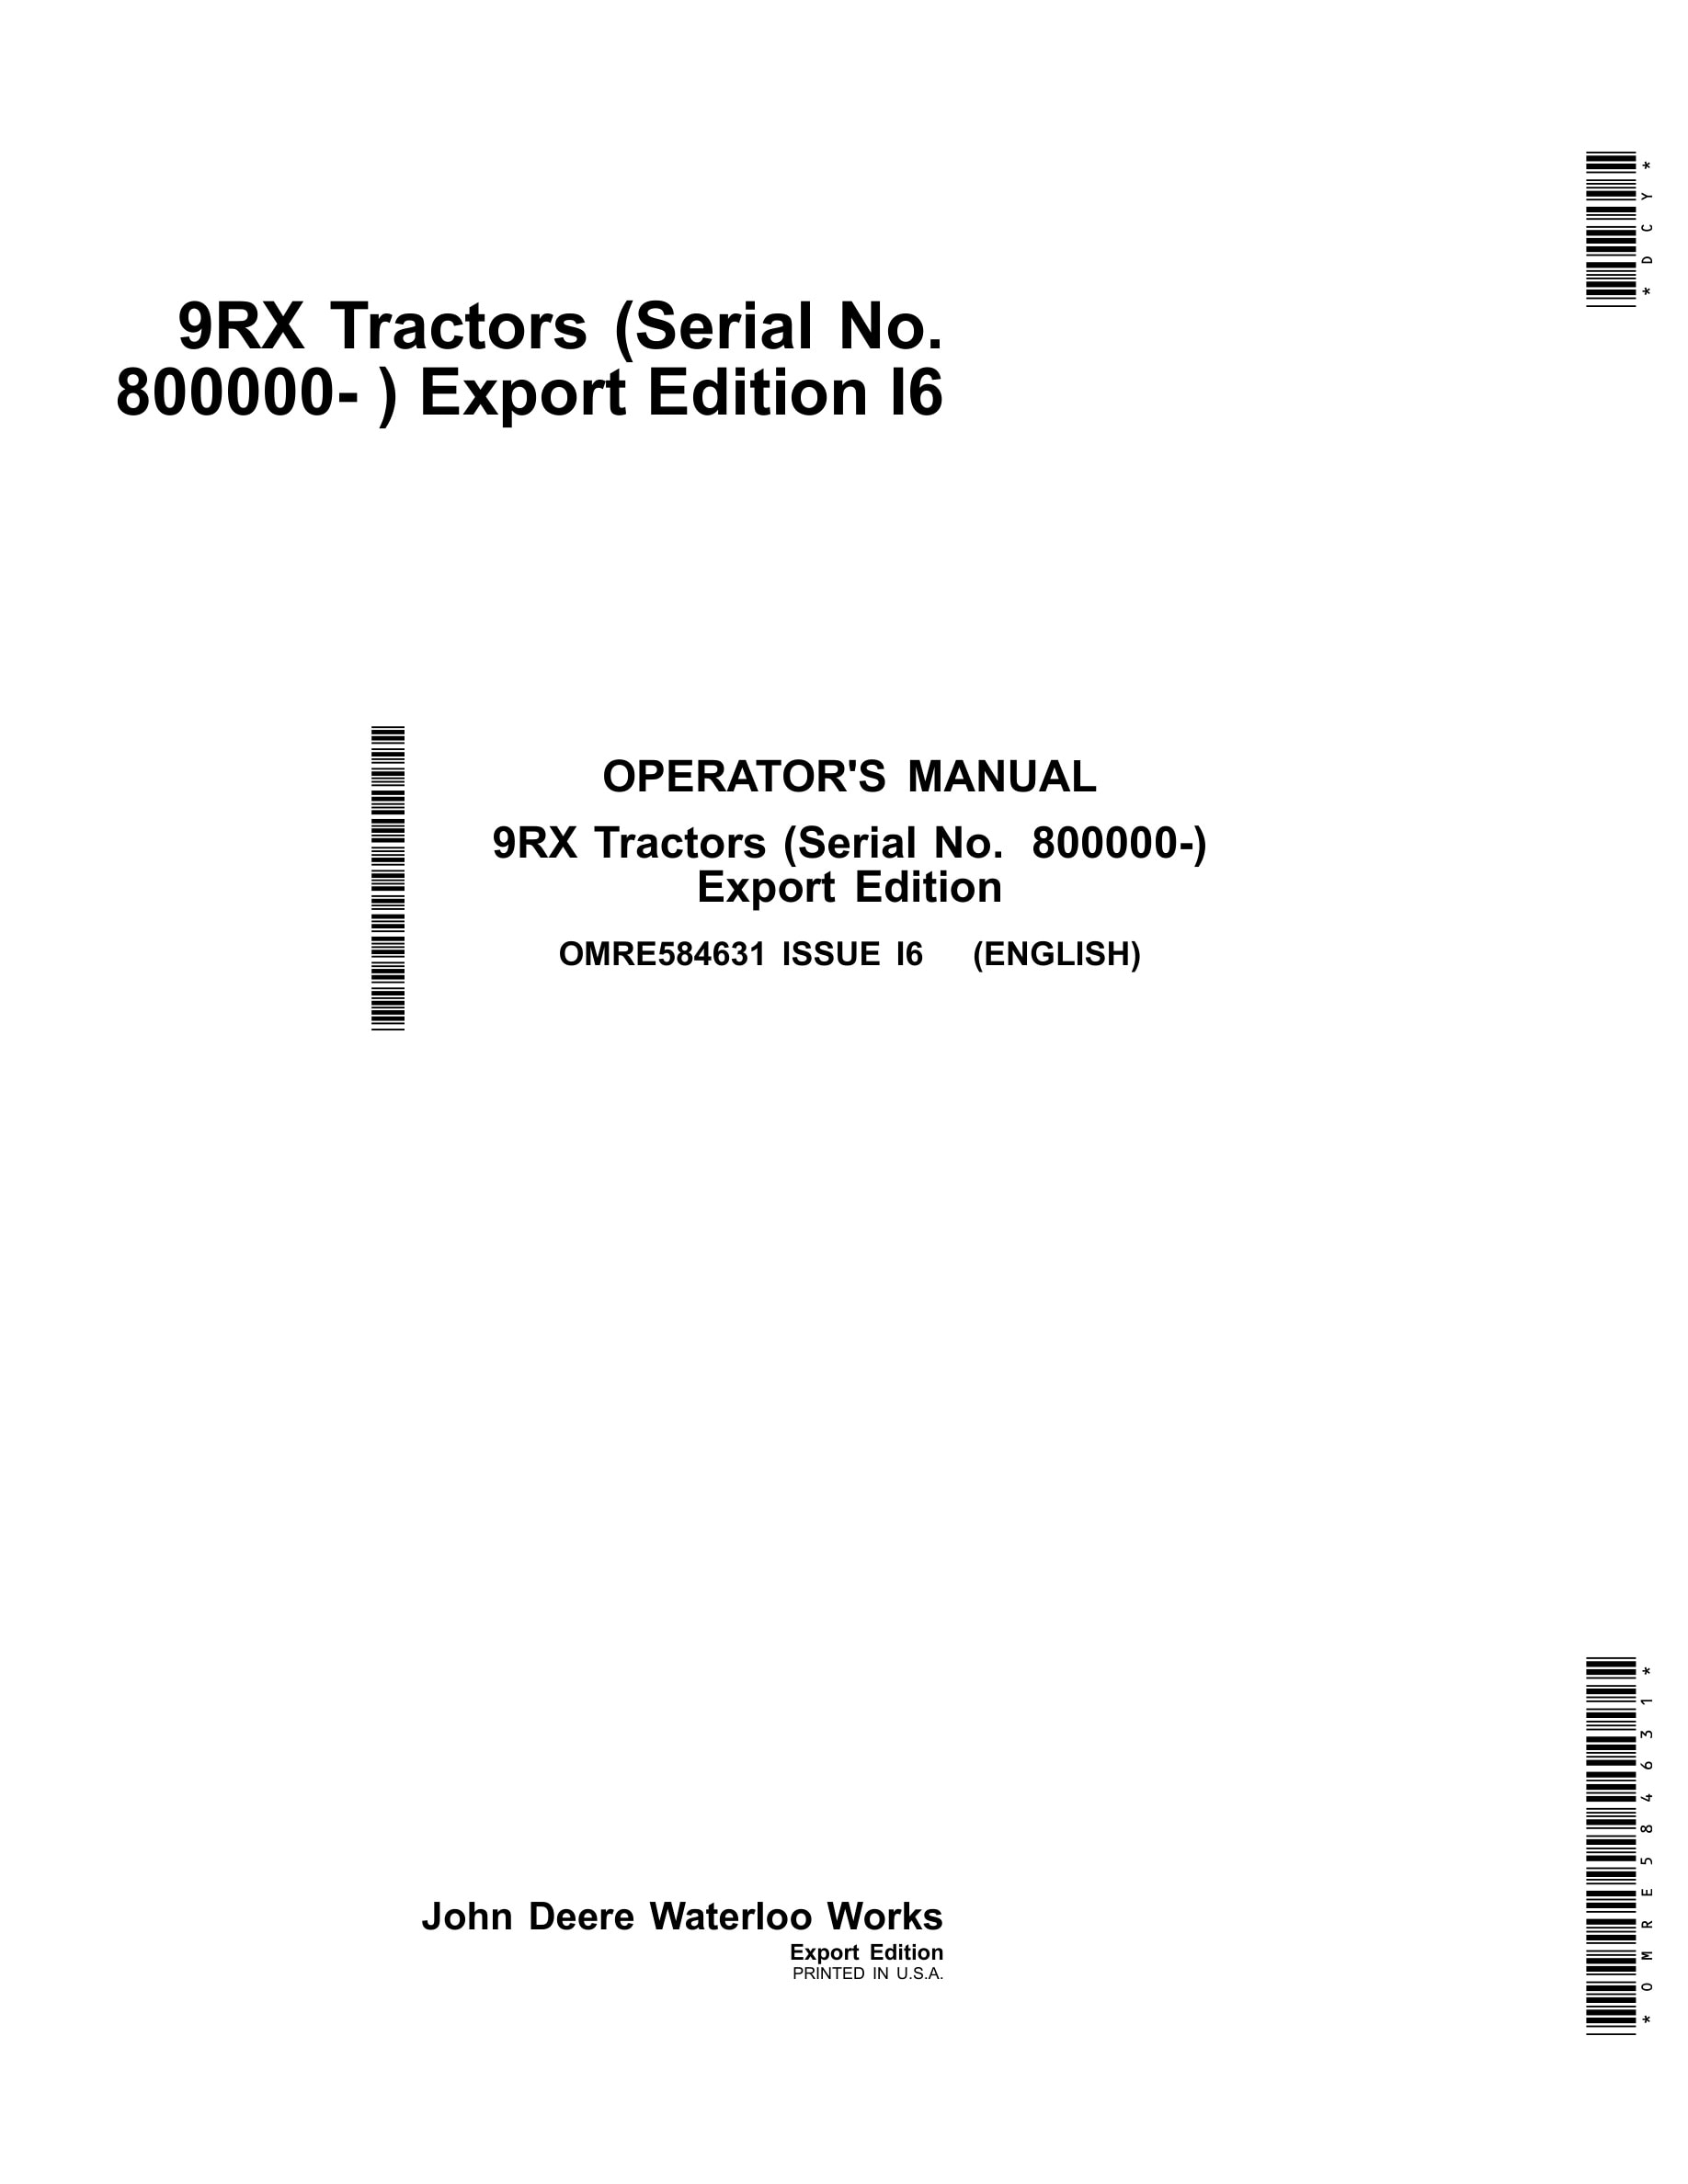 John Deere 9rx Tractors Operator Manuals OMRE584631-1